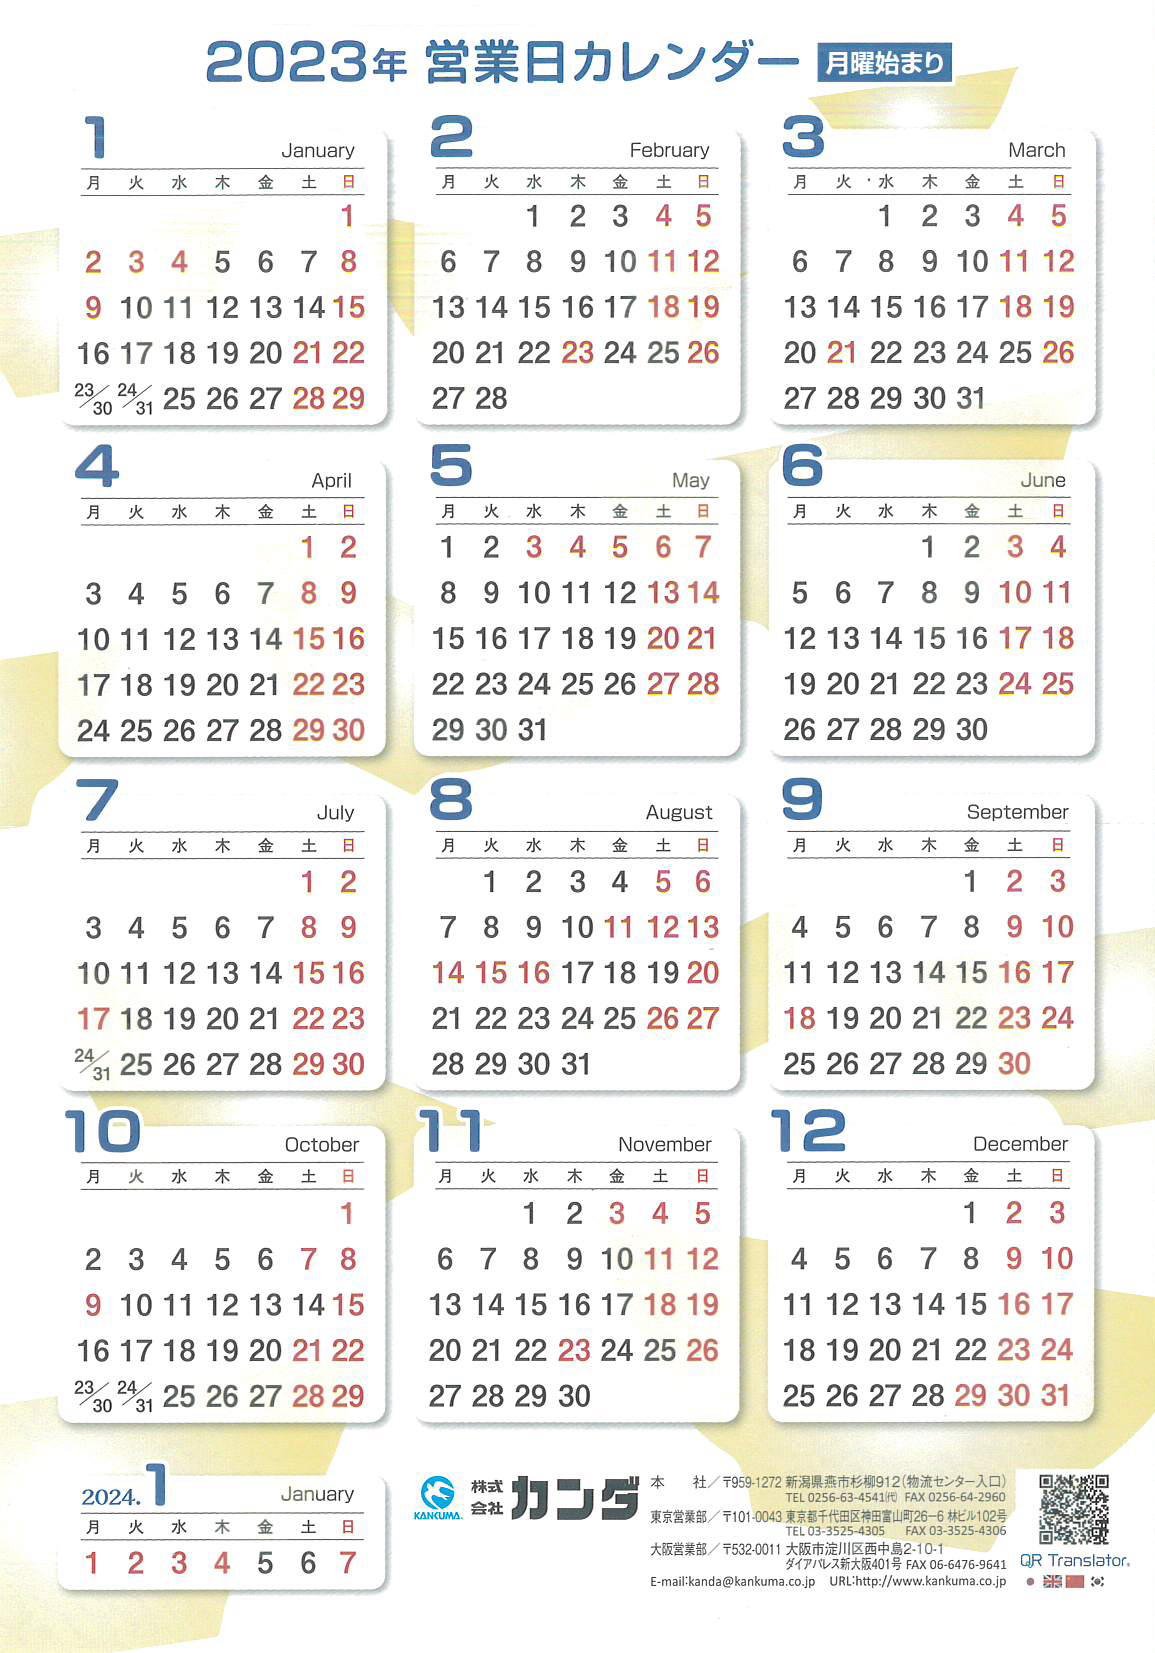 株式会社カンダ 2023営業日カレンダー